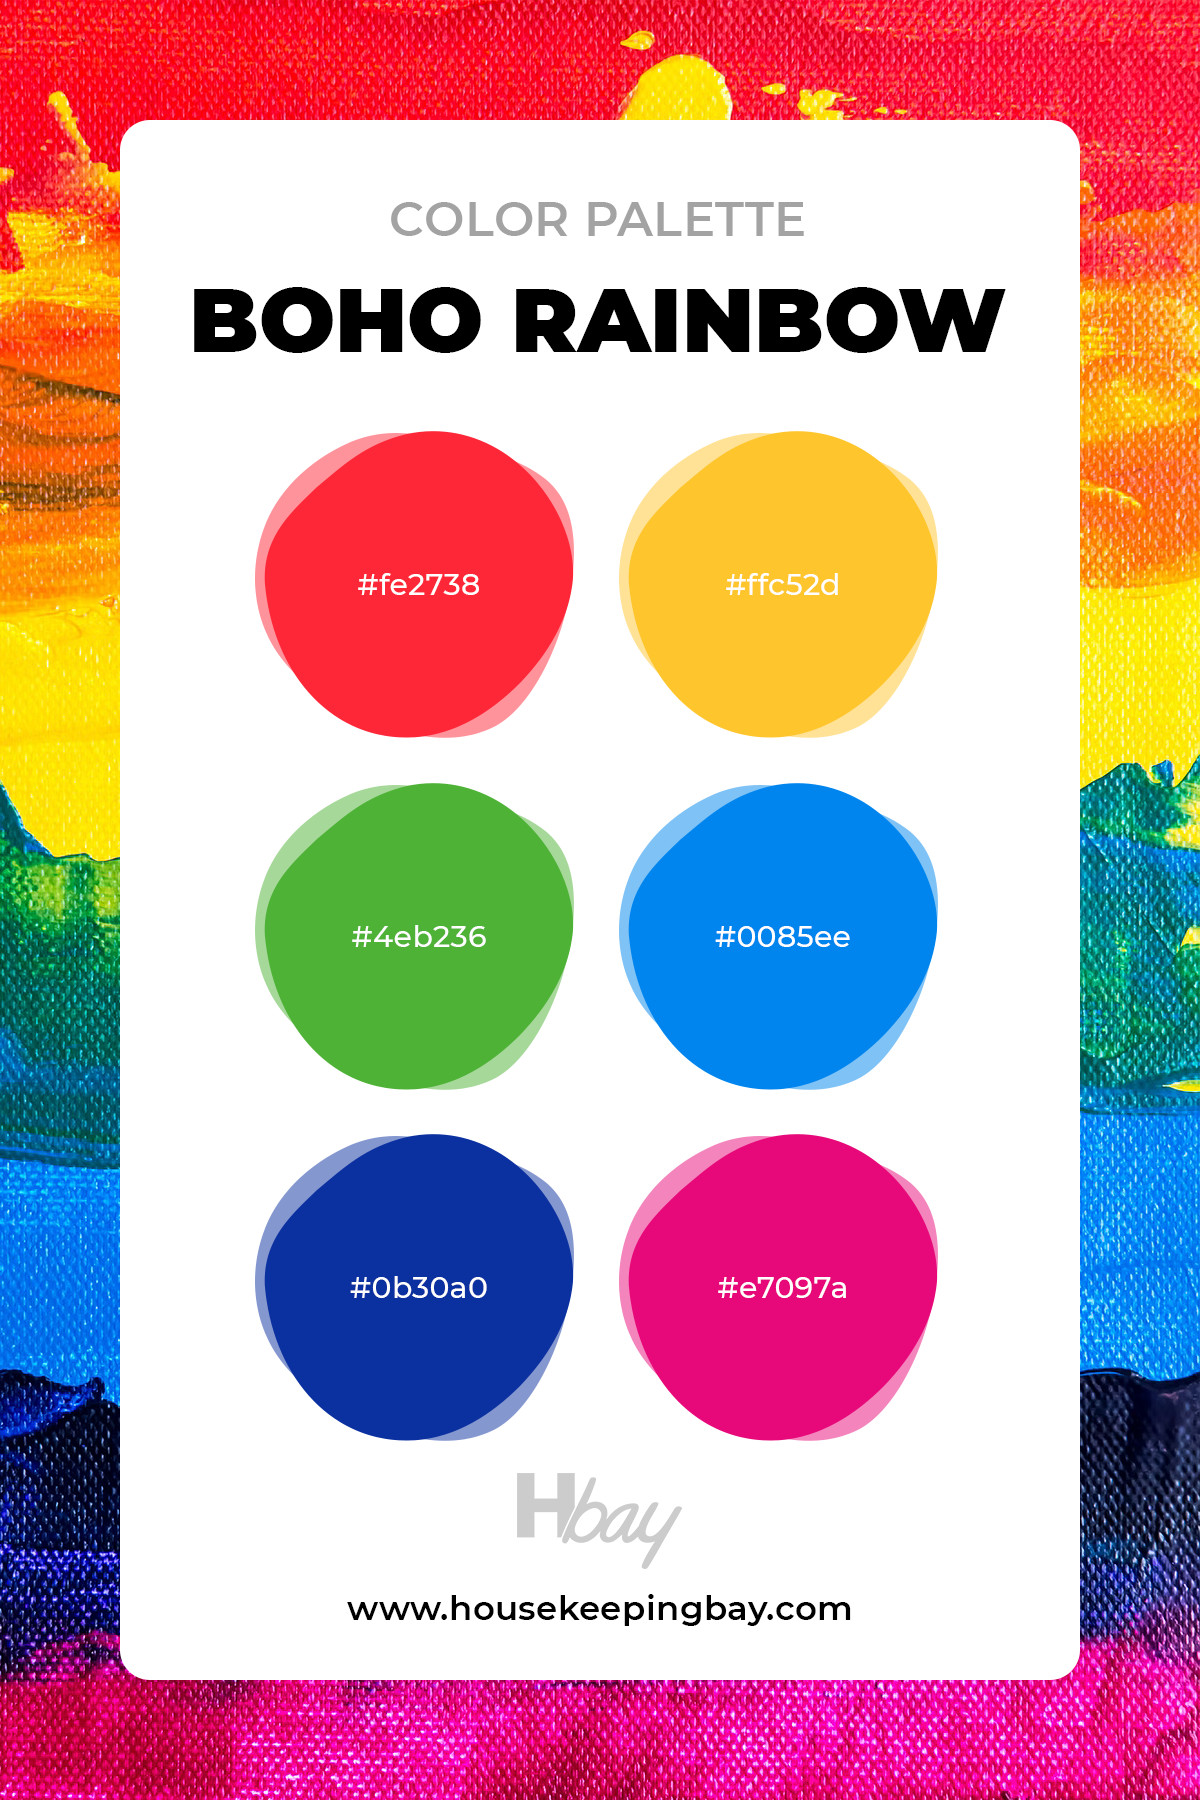 Boho rainbow